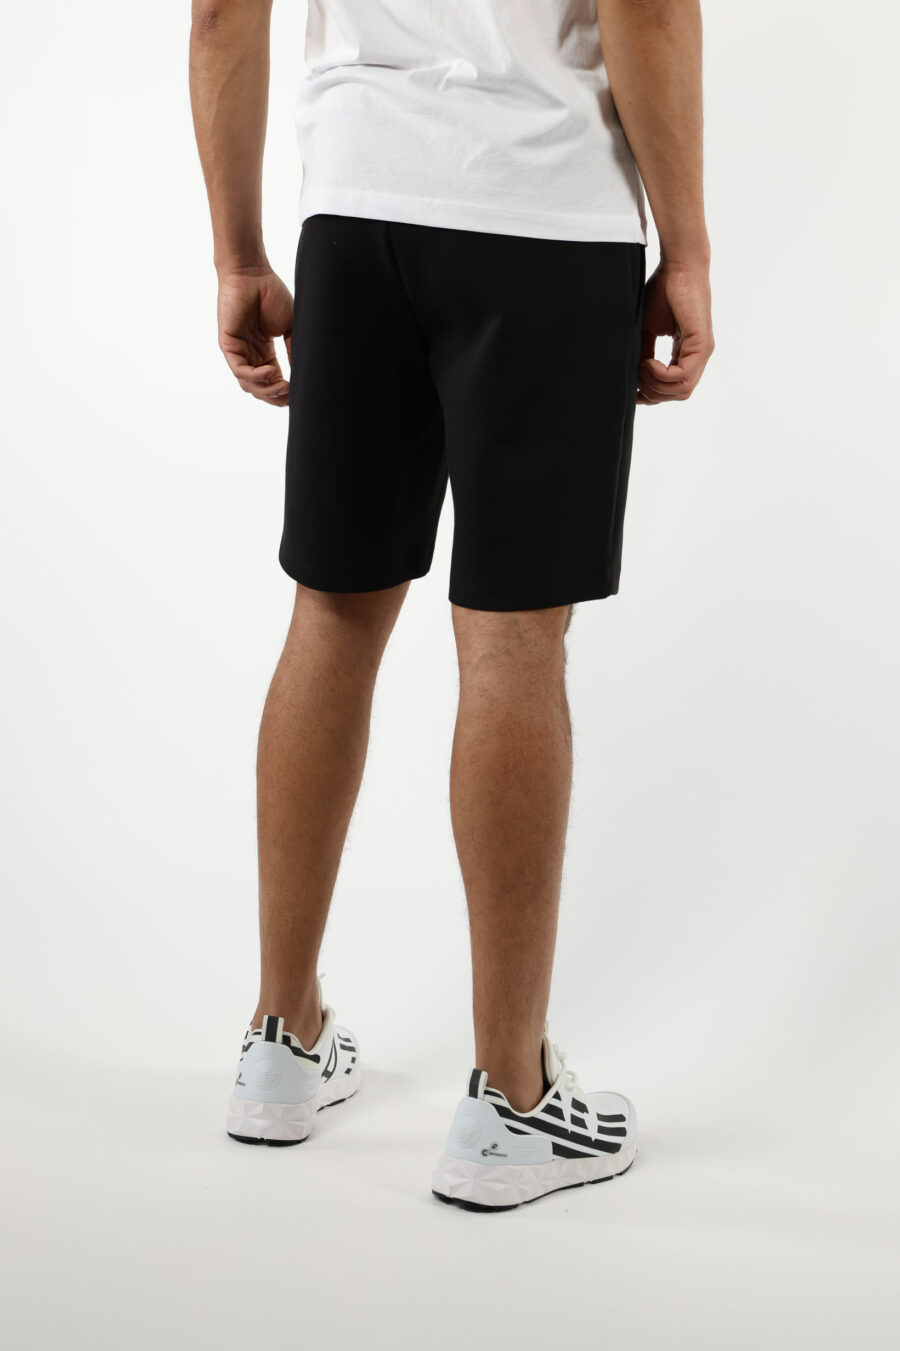 Trainingshose schwarze Shorts mit weißem "lux identity" Minilogo auf schwarzer Platte - 110861